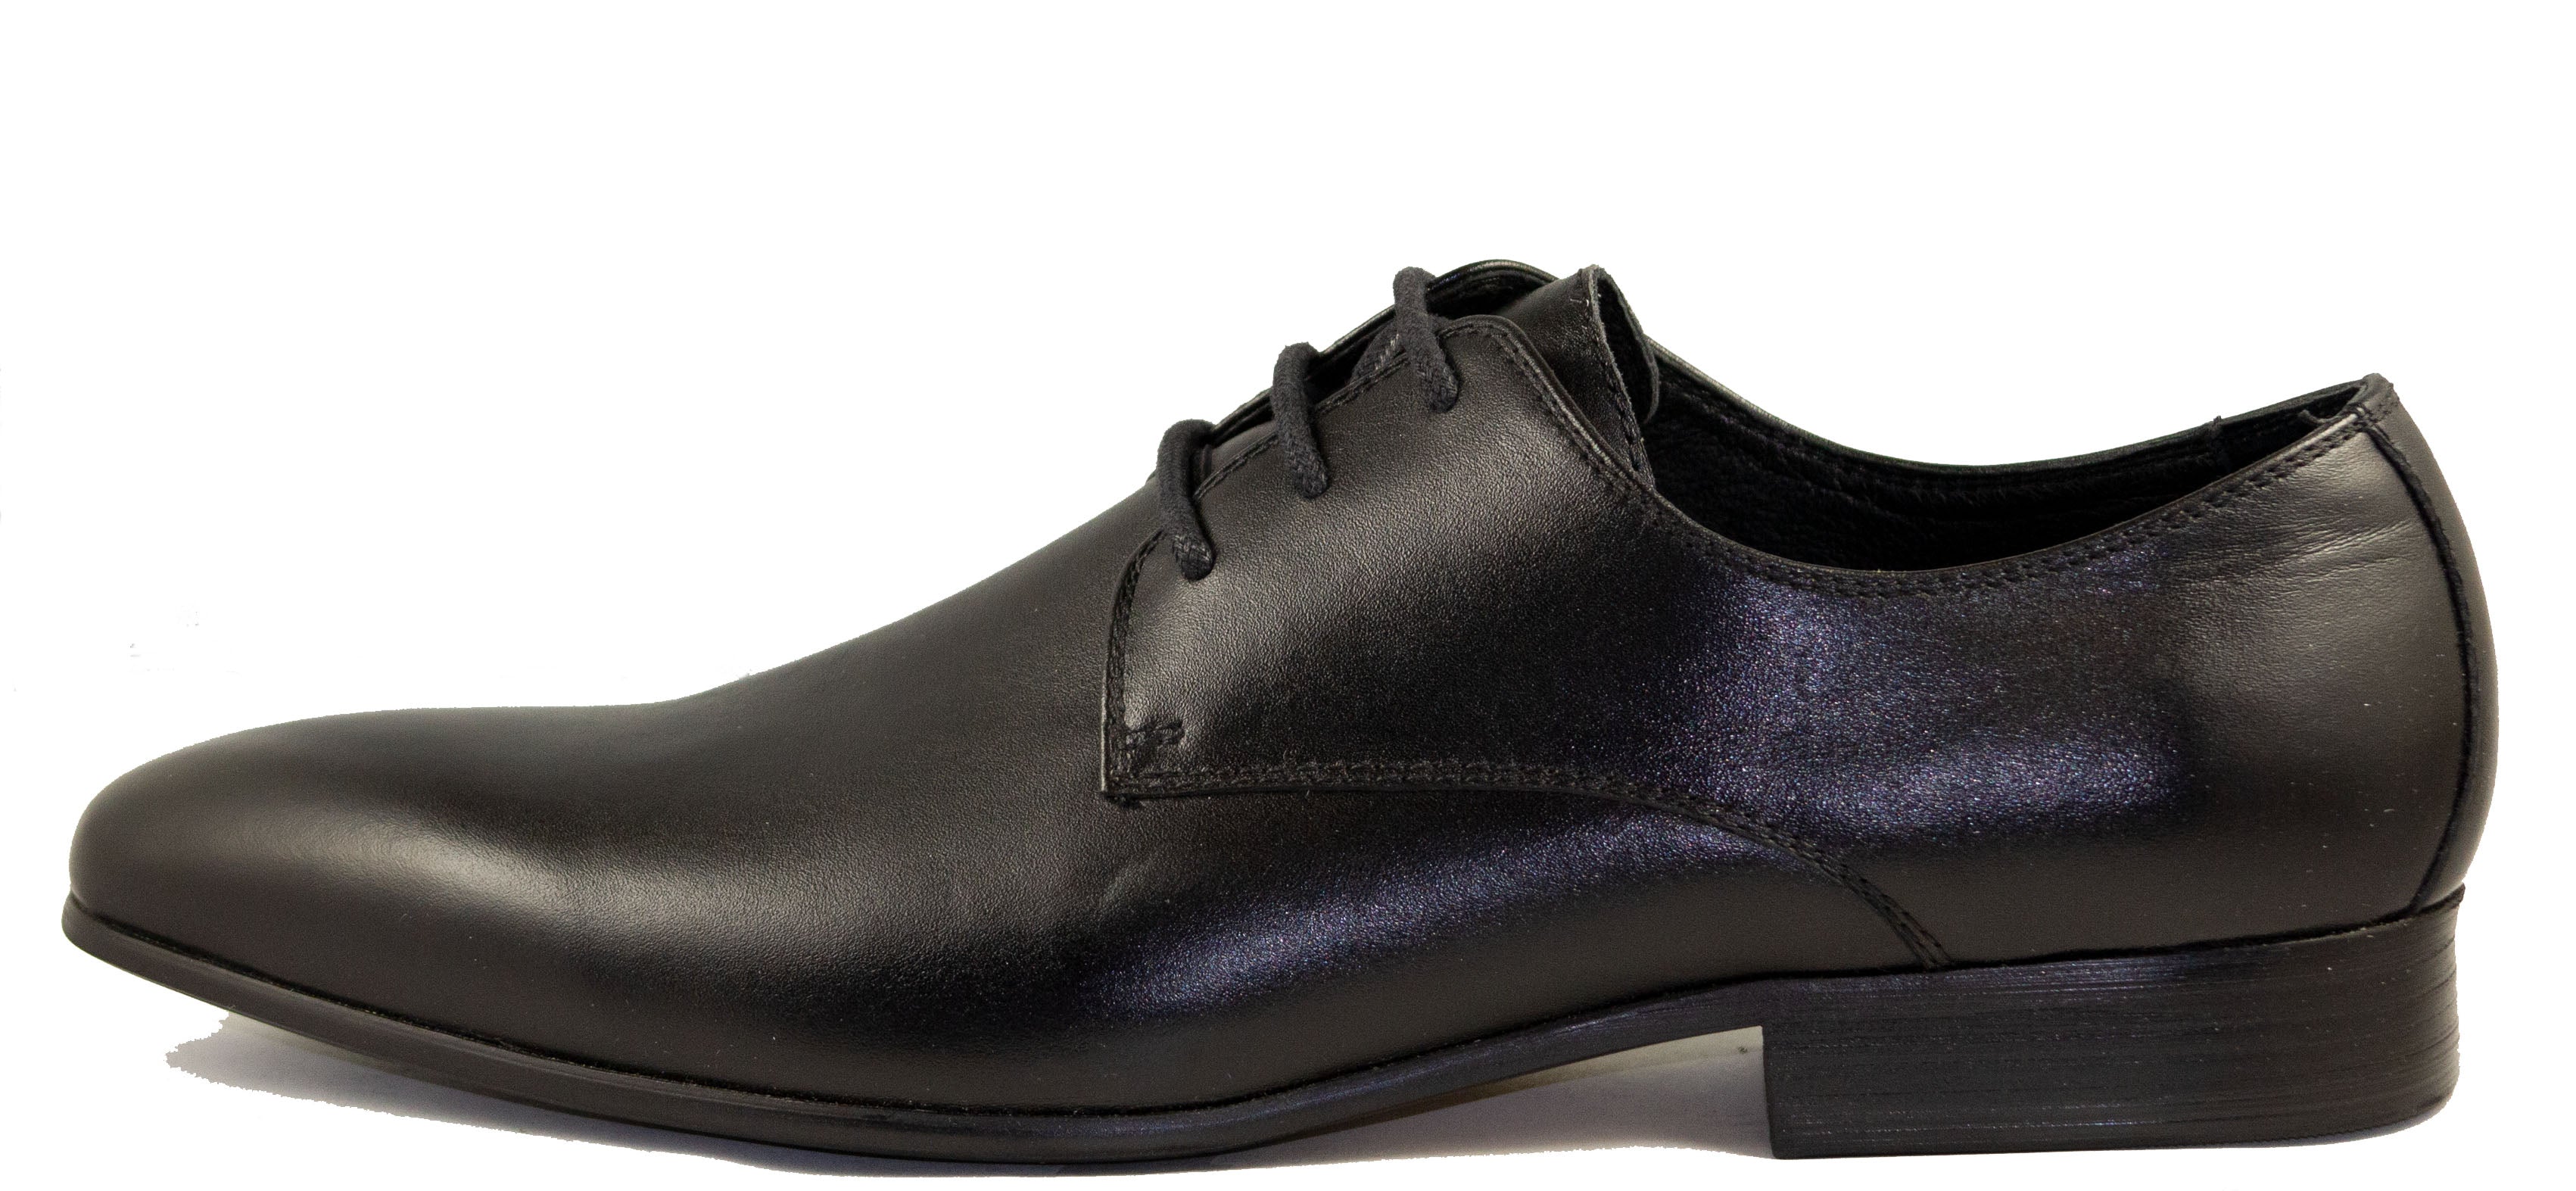 Mario Samello Men's Black Leather Plain Toe Dress Shoes  L007-9-E146